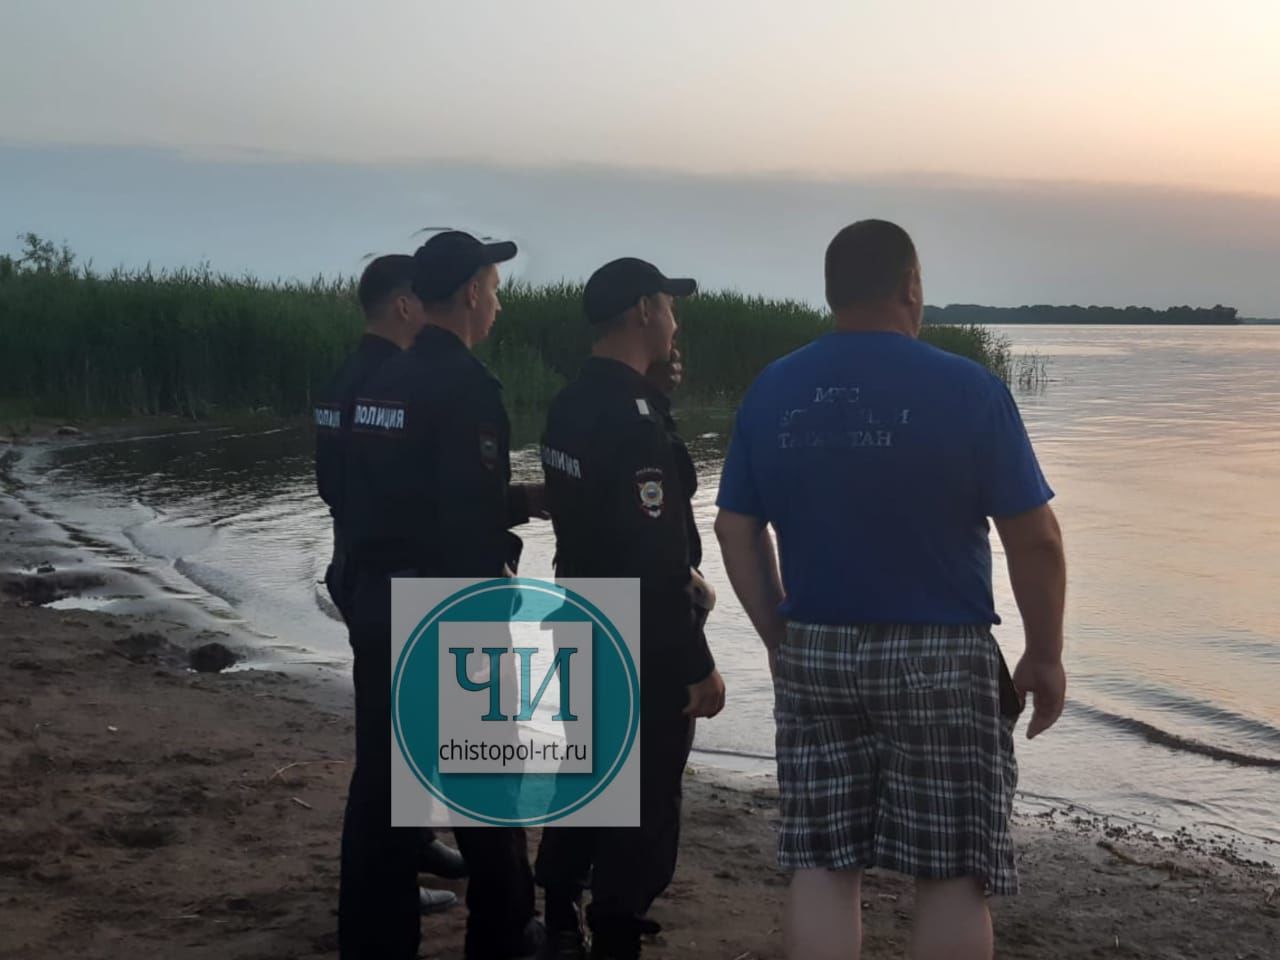 "Хотел на спор доплыть до косы": на Каме в Чистополе утонул 25-летний парень